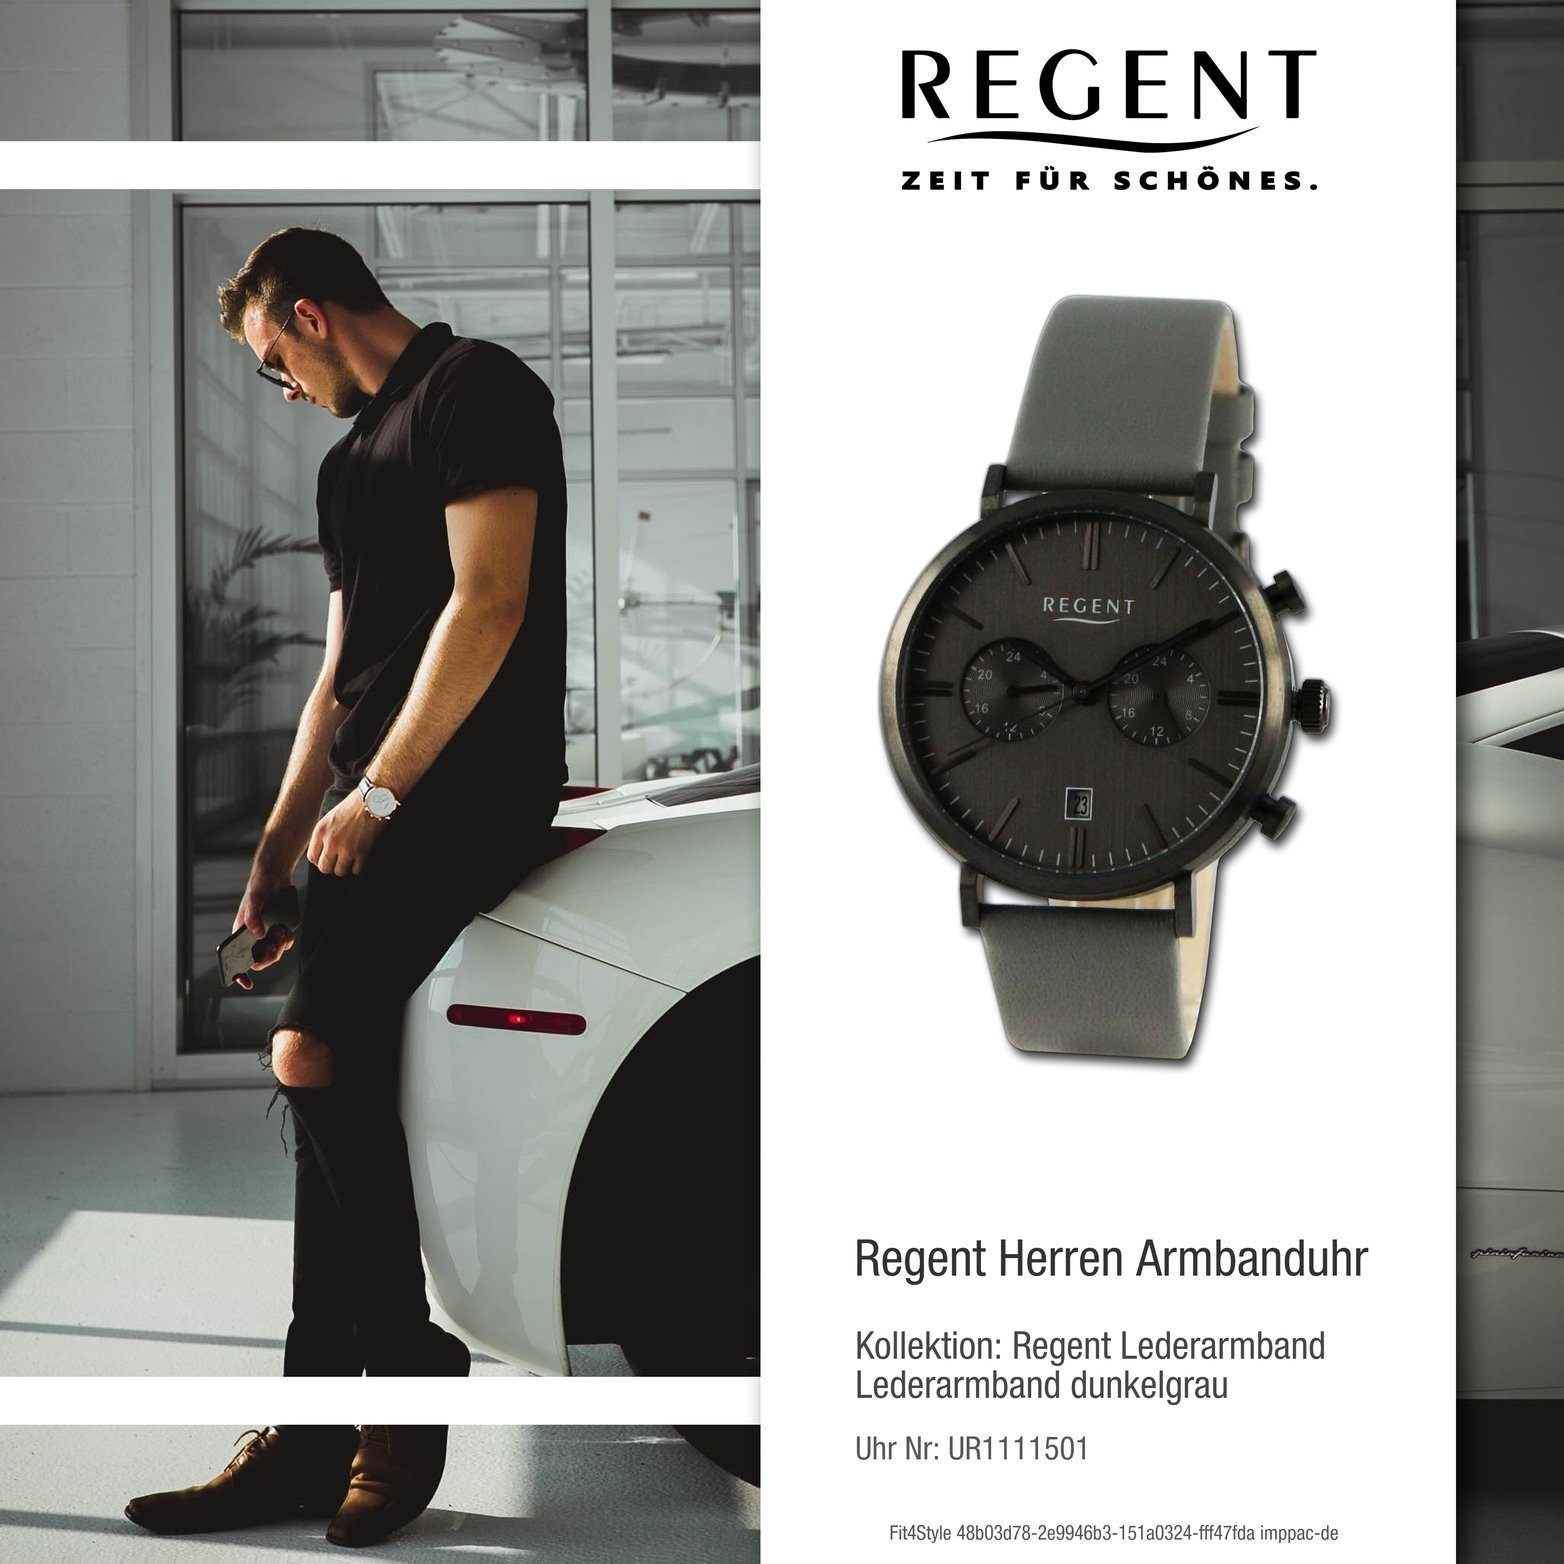 Gehäuse, Armbanduhr Lederarmband rundes Analog, dunkelgrau, Herren (ca. Herrenuhr groß 41mm) Quarzuhr Regent Regent